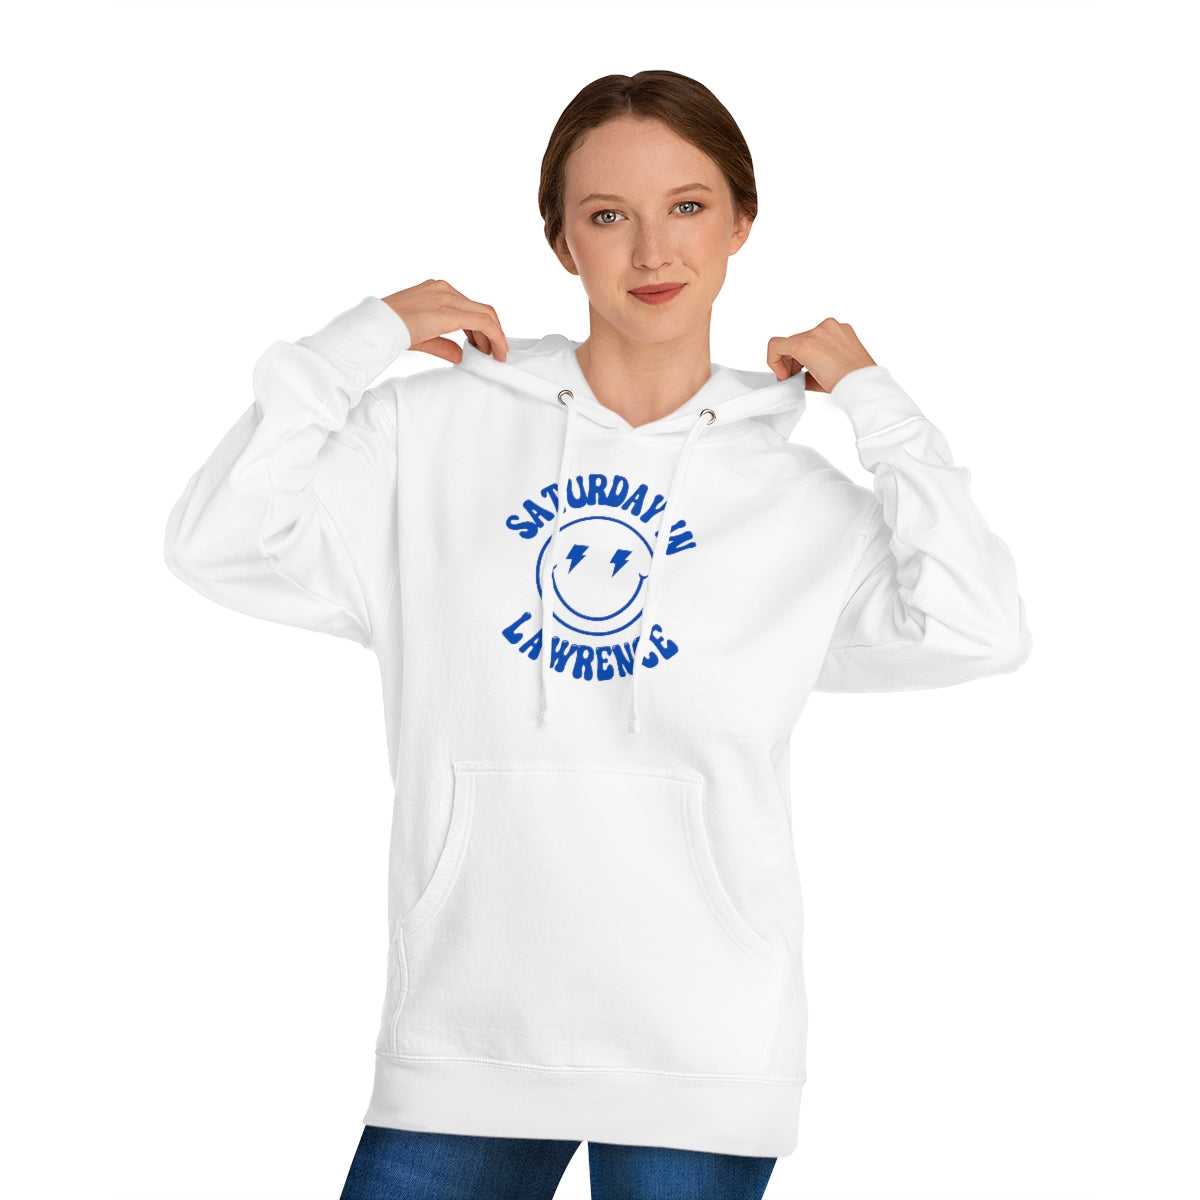 Smiley Lawrence Hooded Sweatshirt - GG - ITC